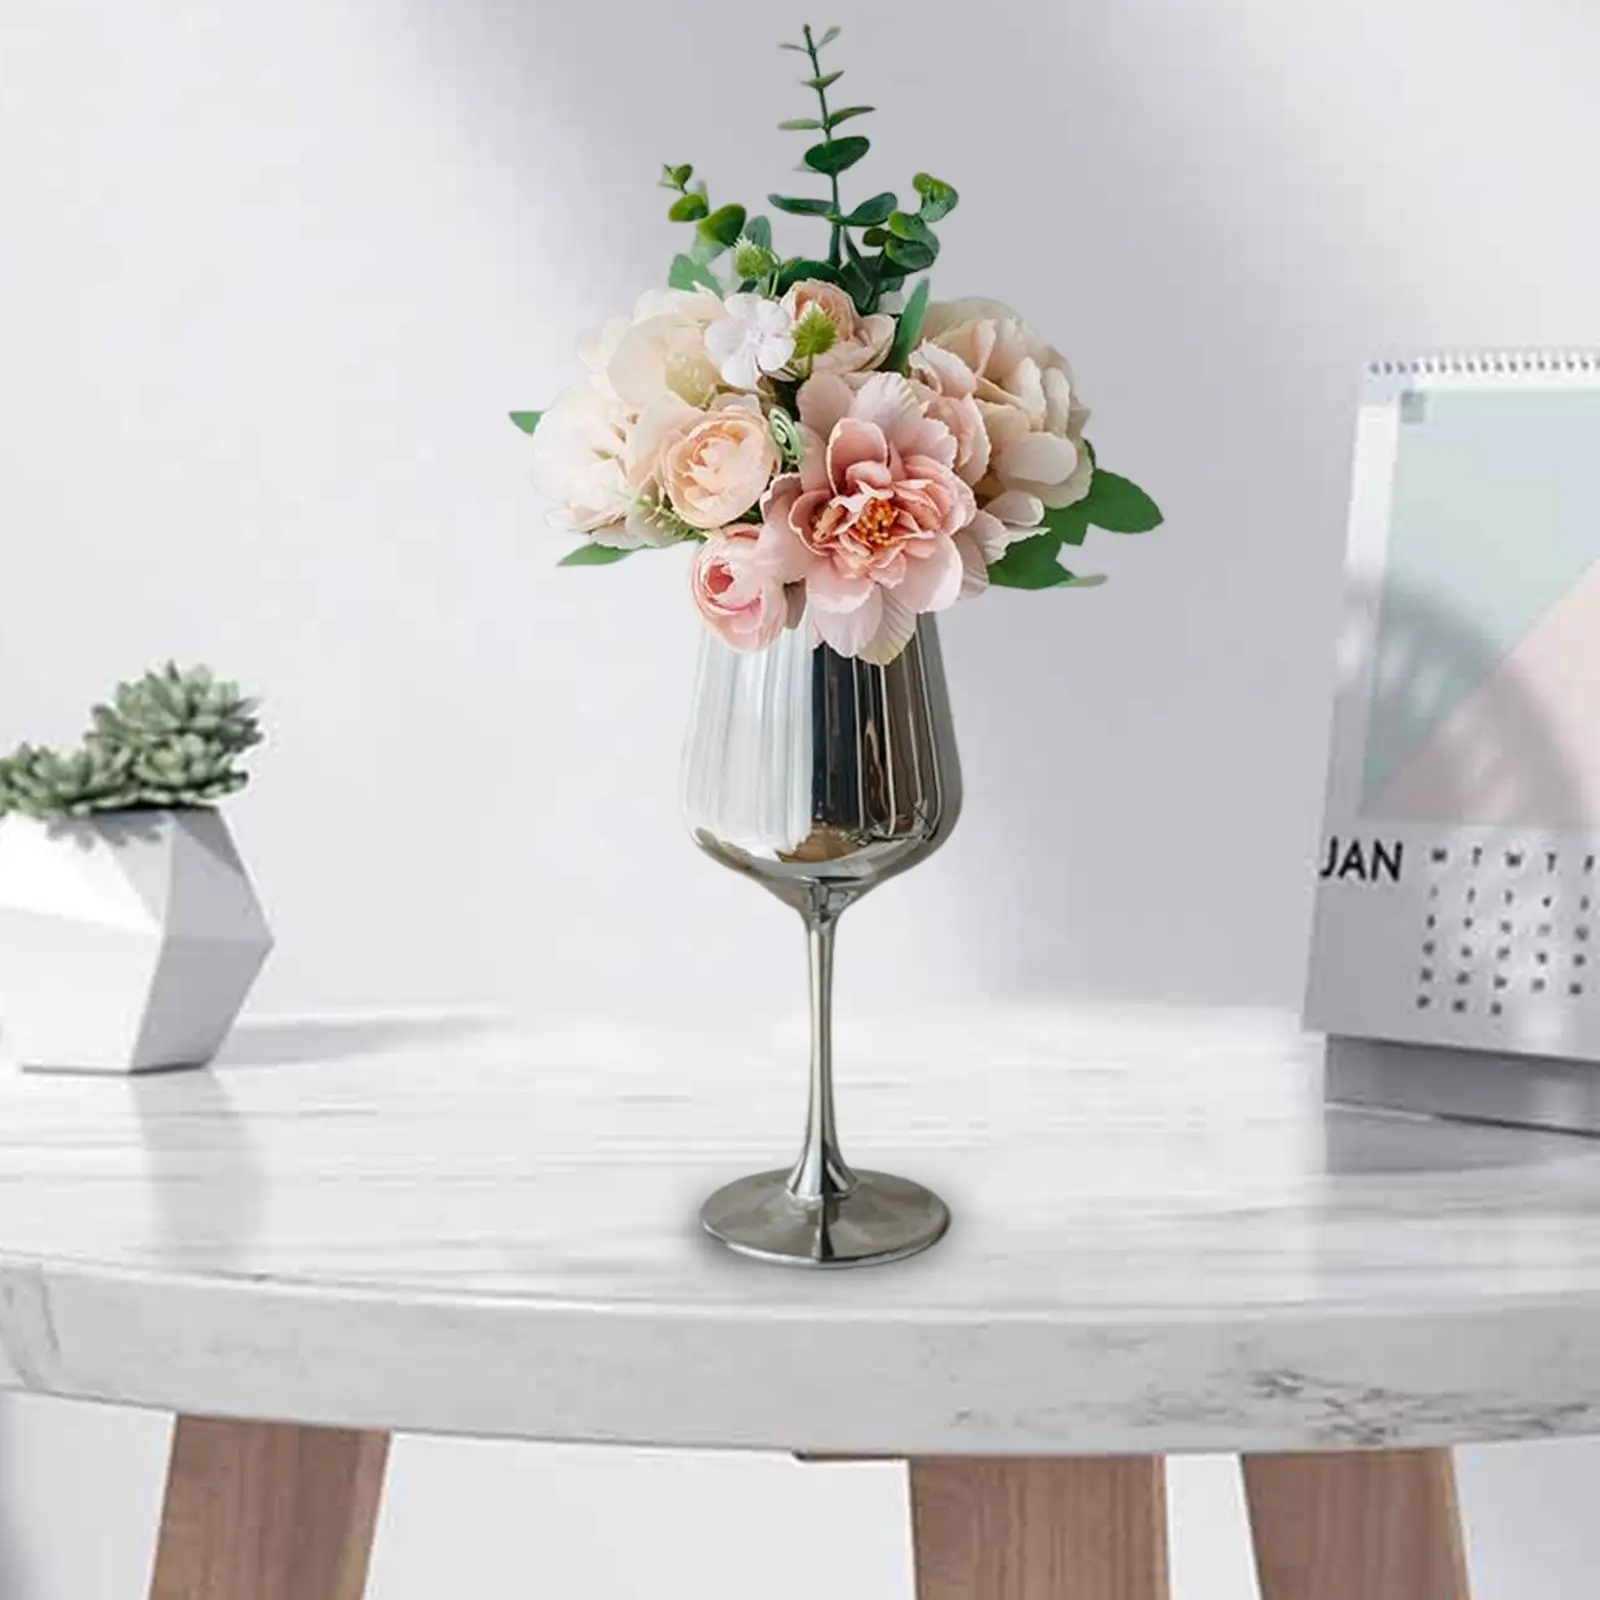 Artificial Flowers Hydrangea Bonsai for Table Centerpieces Kitchen Decor